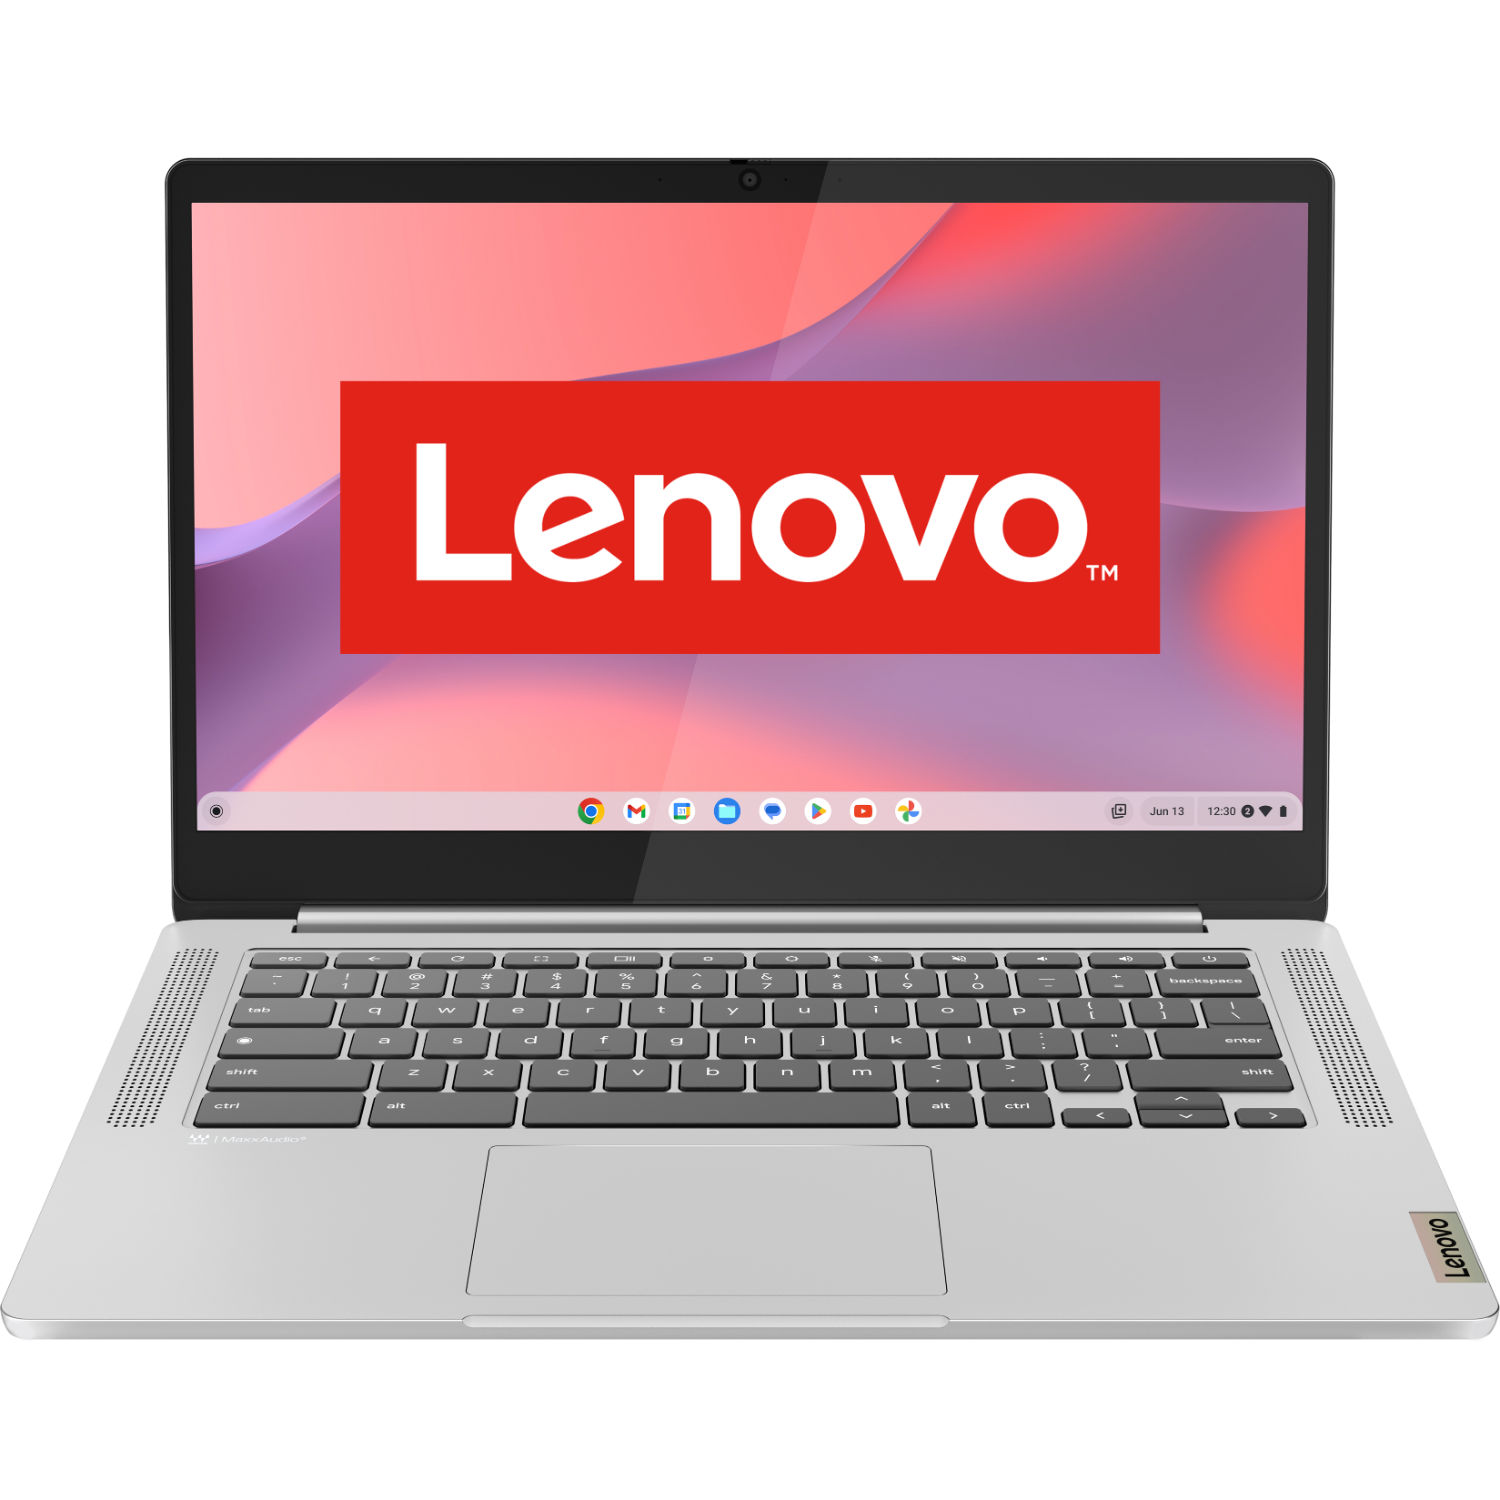 Lenovo Ideapad Slim 3 Chrome 14m868 - 14 Inch Mediatek 4 Gb 64